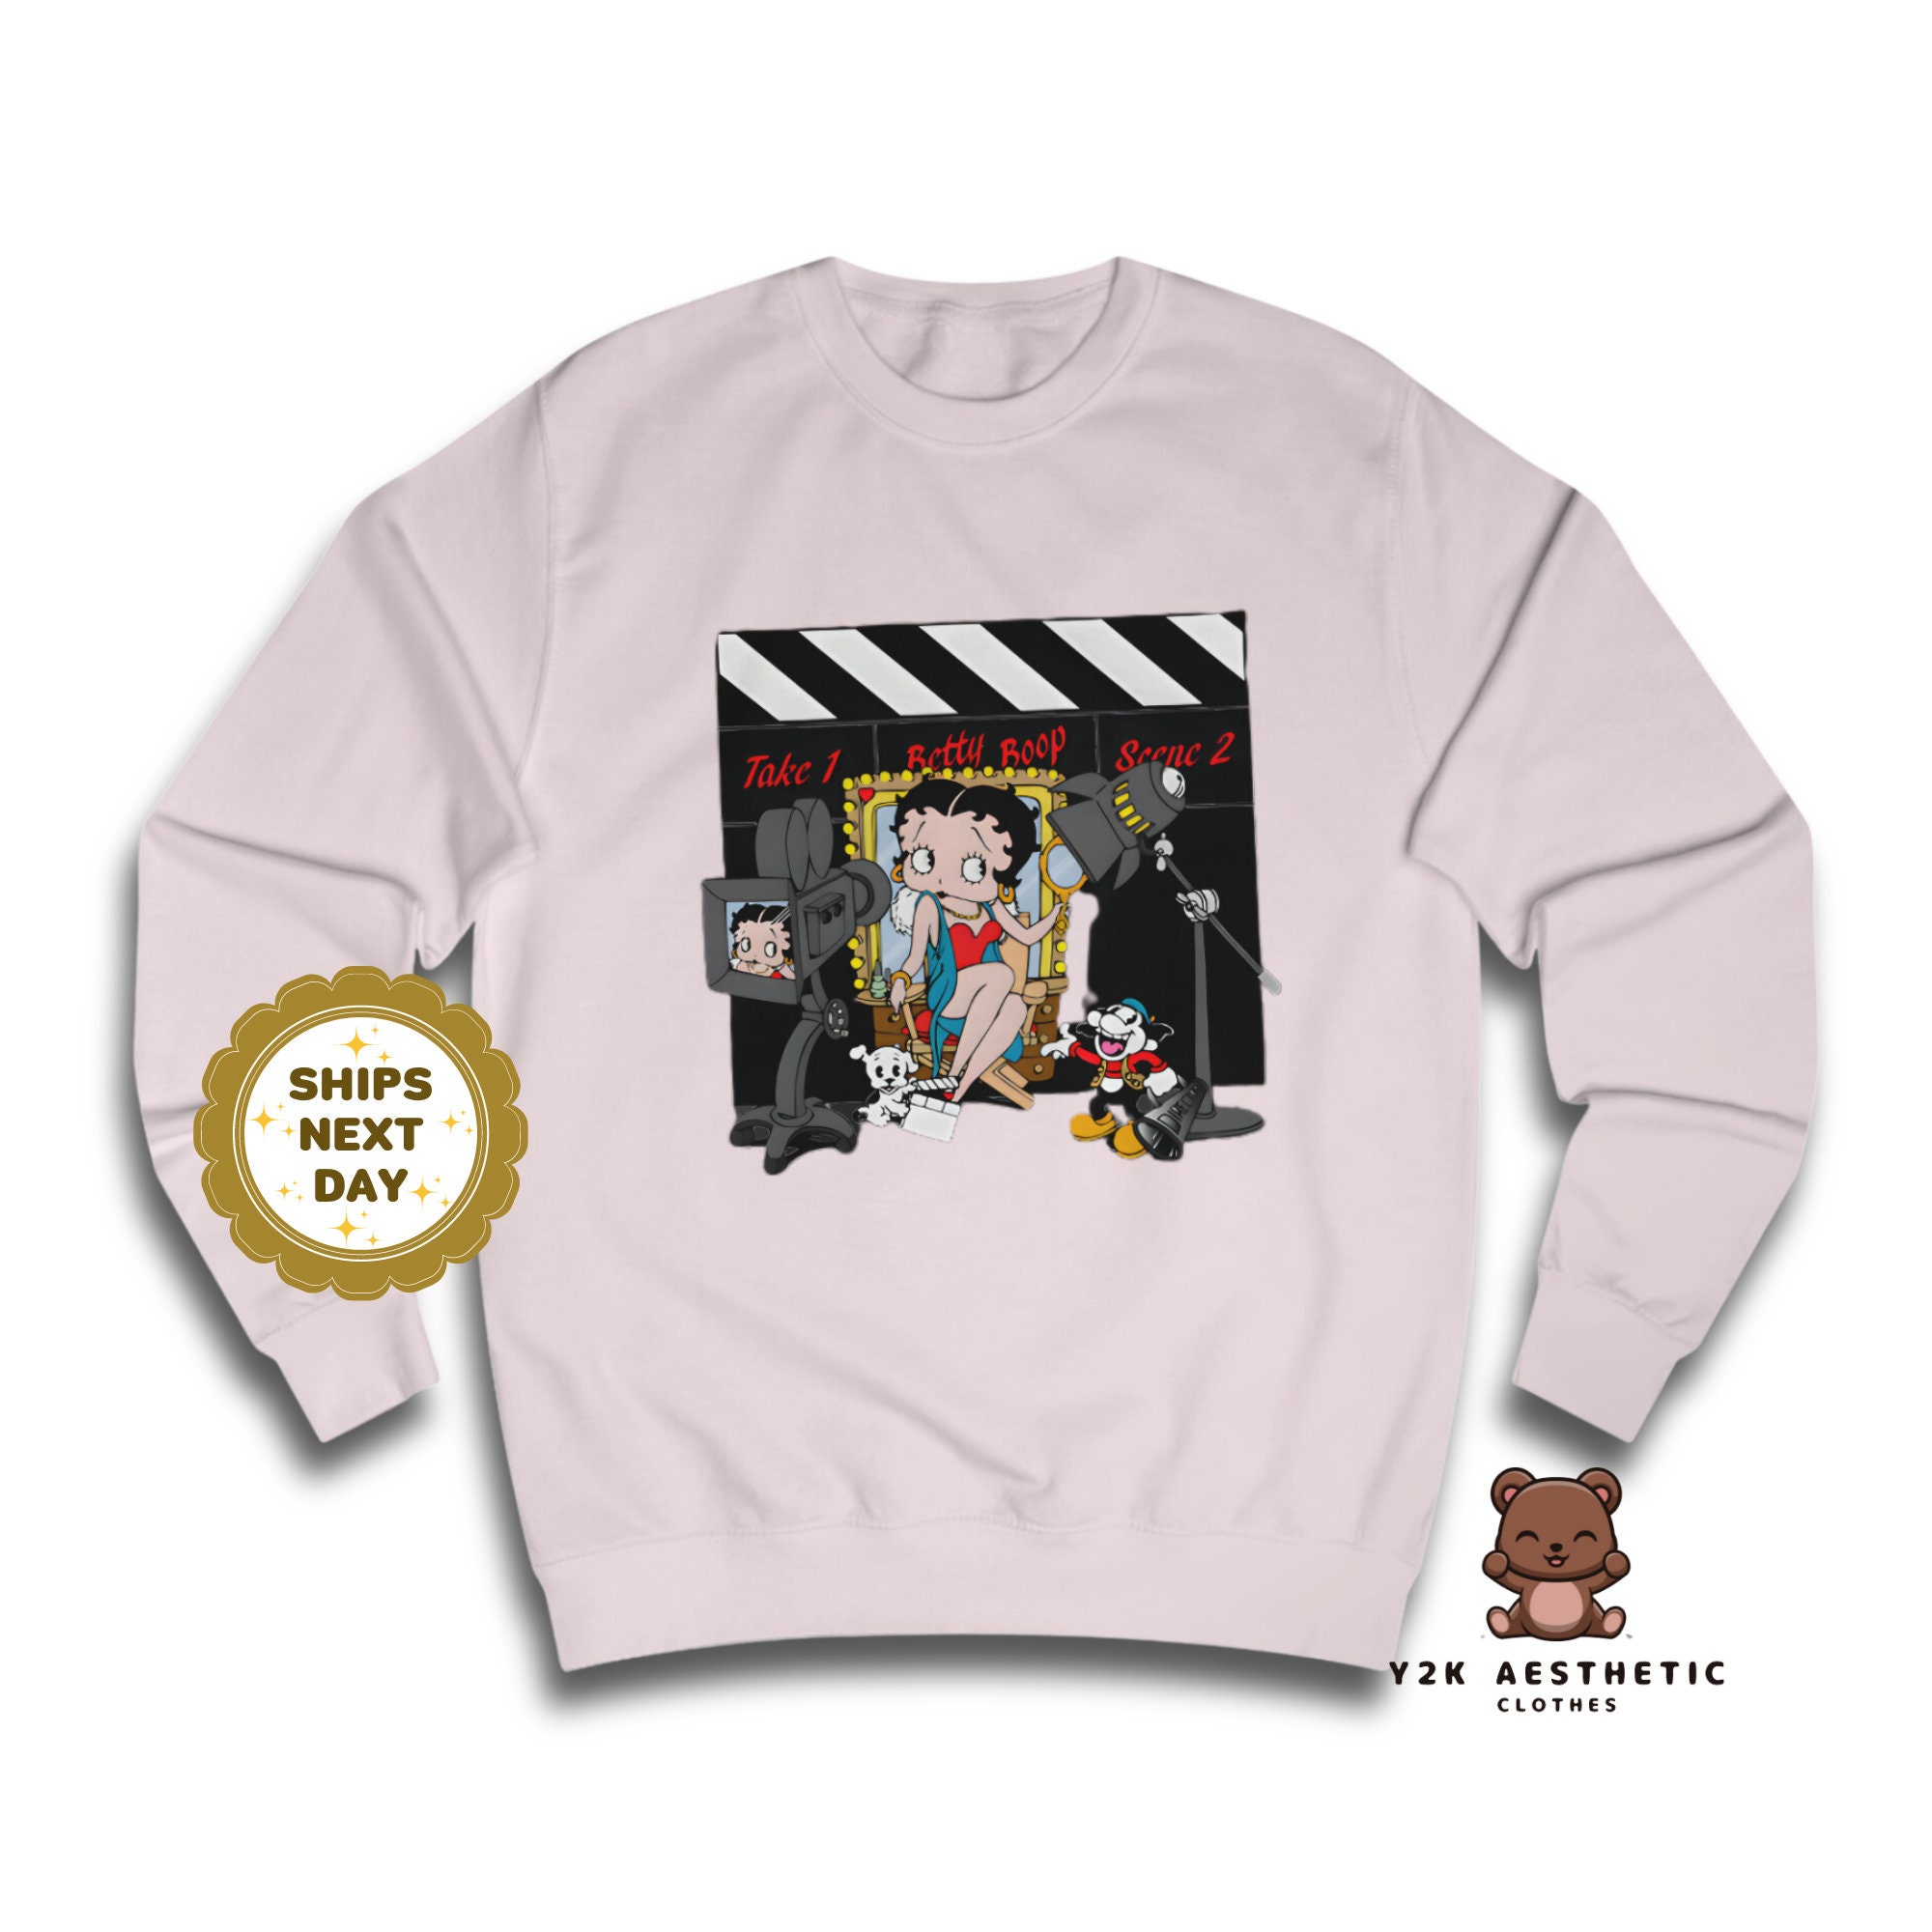 Vintage Betty Boop Sweatshirt for Women - Y2K Cartoon Clothes